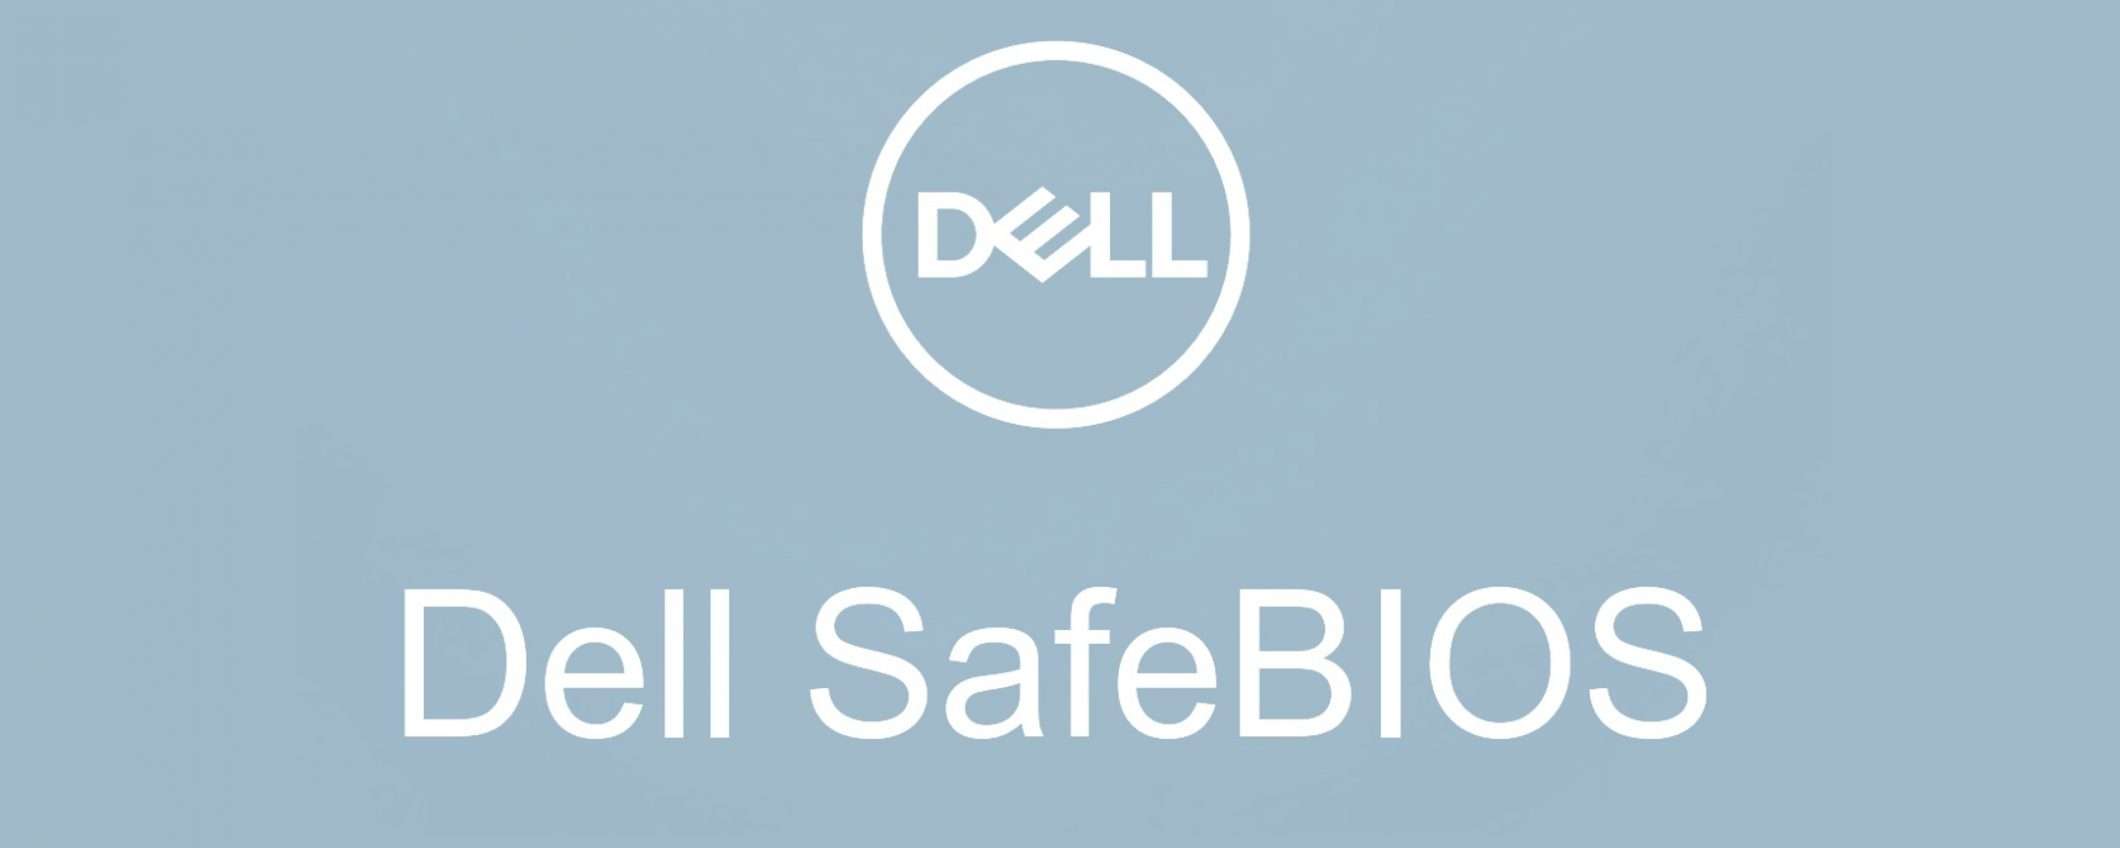 Dell SafeBIOS: un allarme contro gli exploit